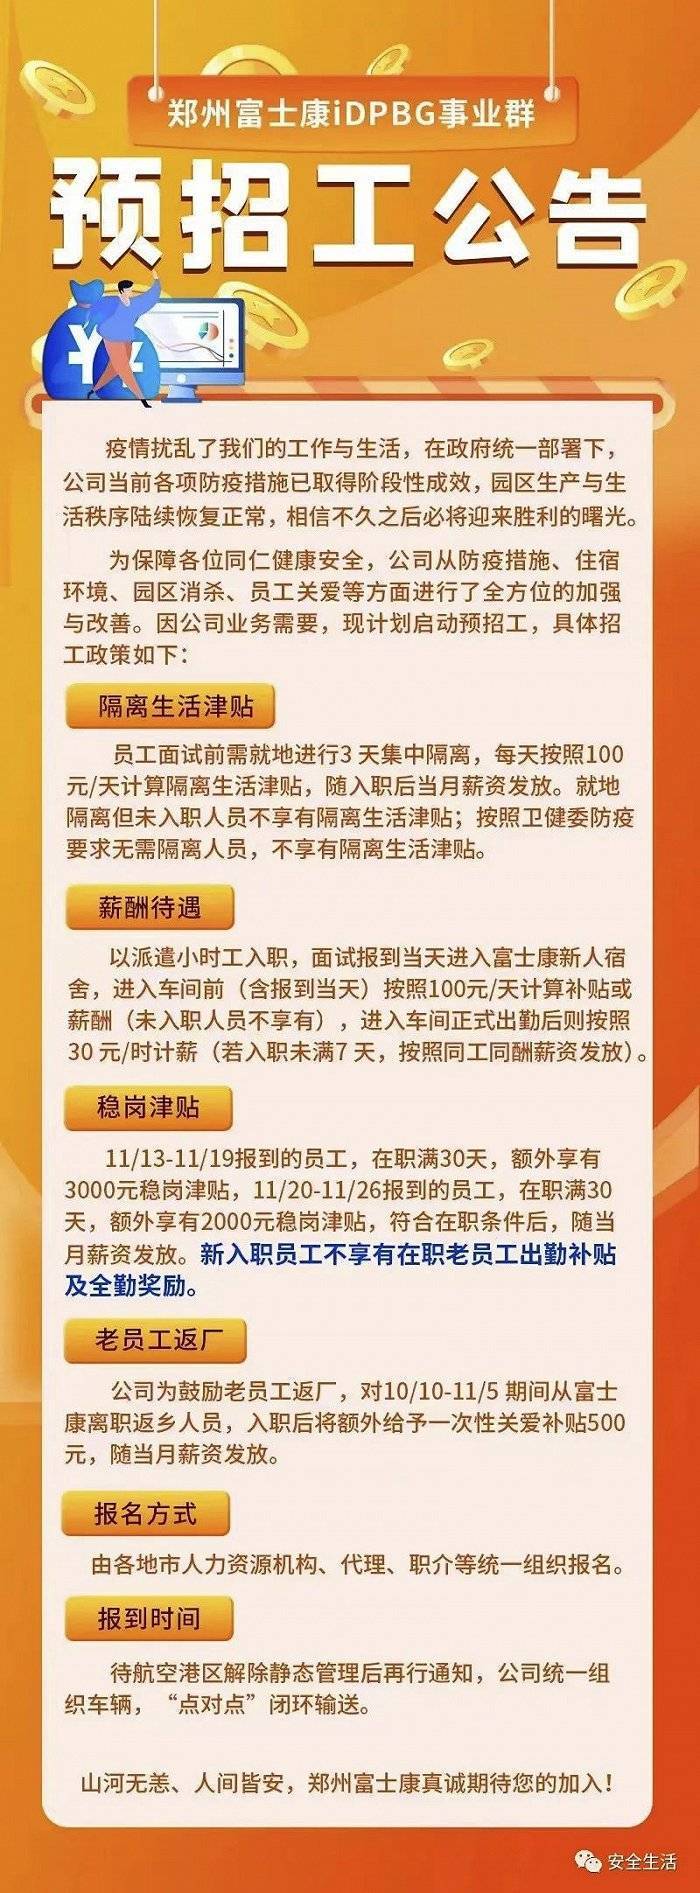 郑州富士康iDPBG事业群启动预招工，新员工稳岗津贴最高3000元